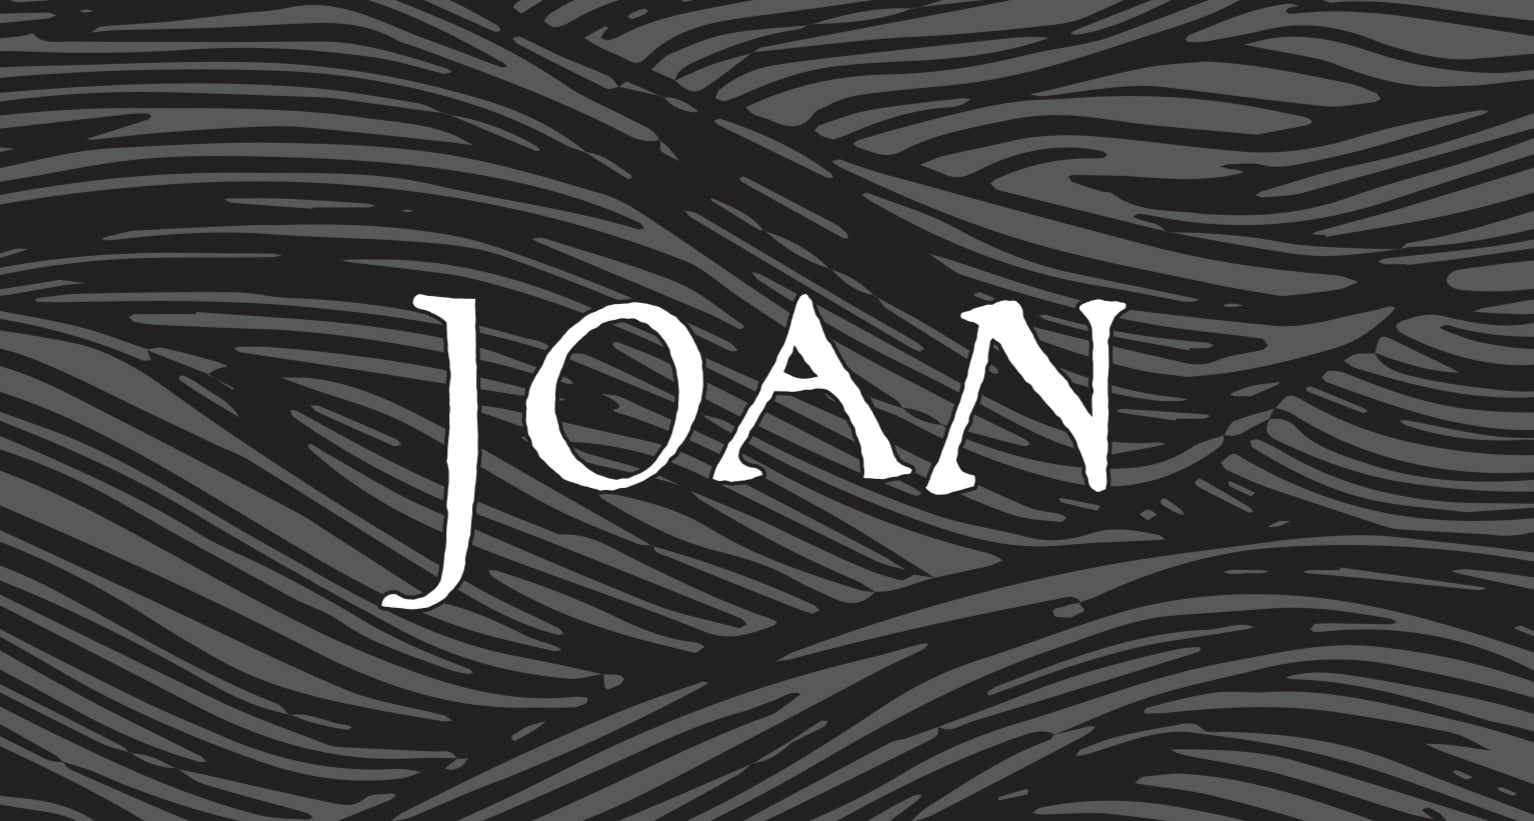 Joan 2020 Sparkling